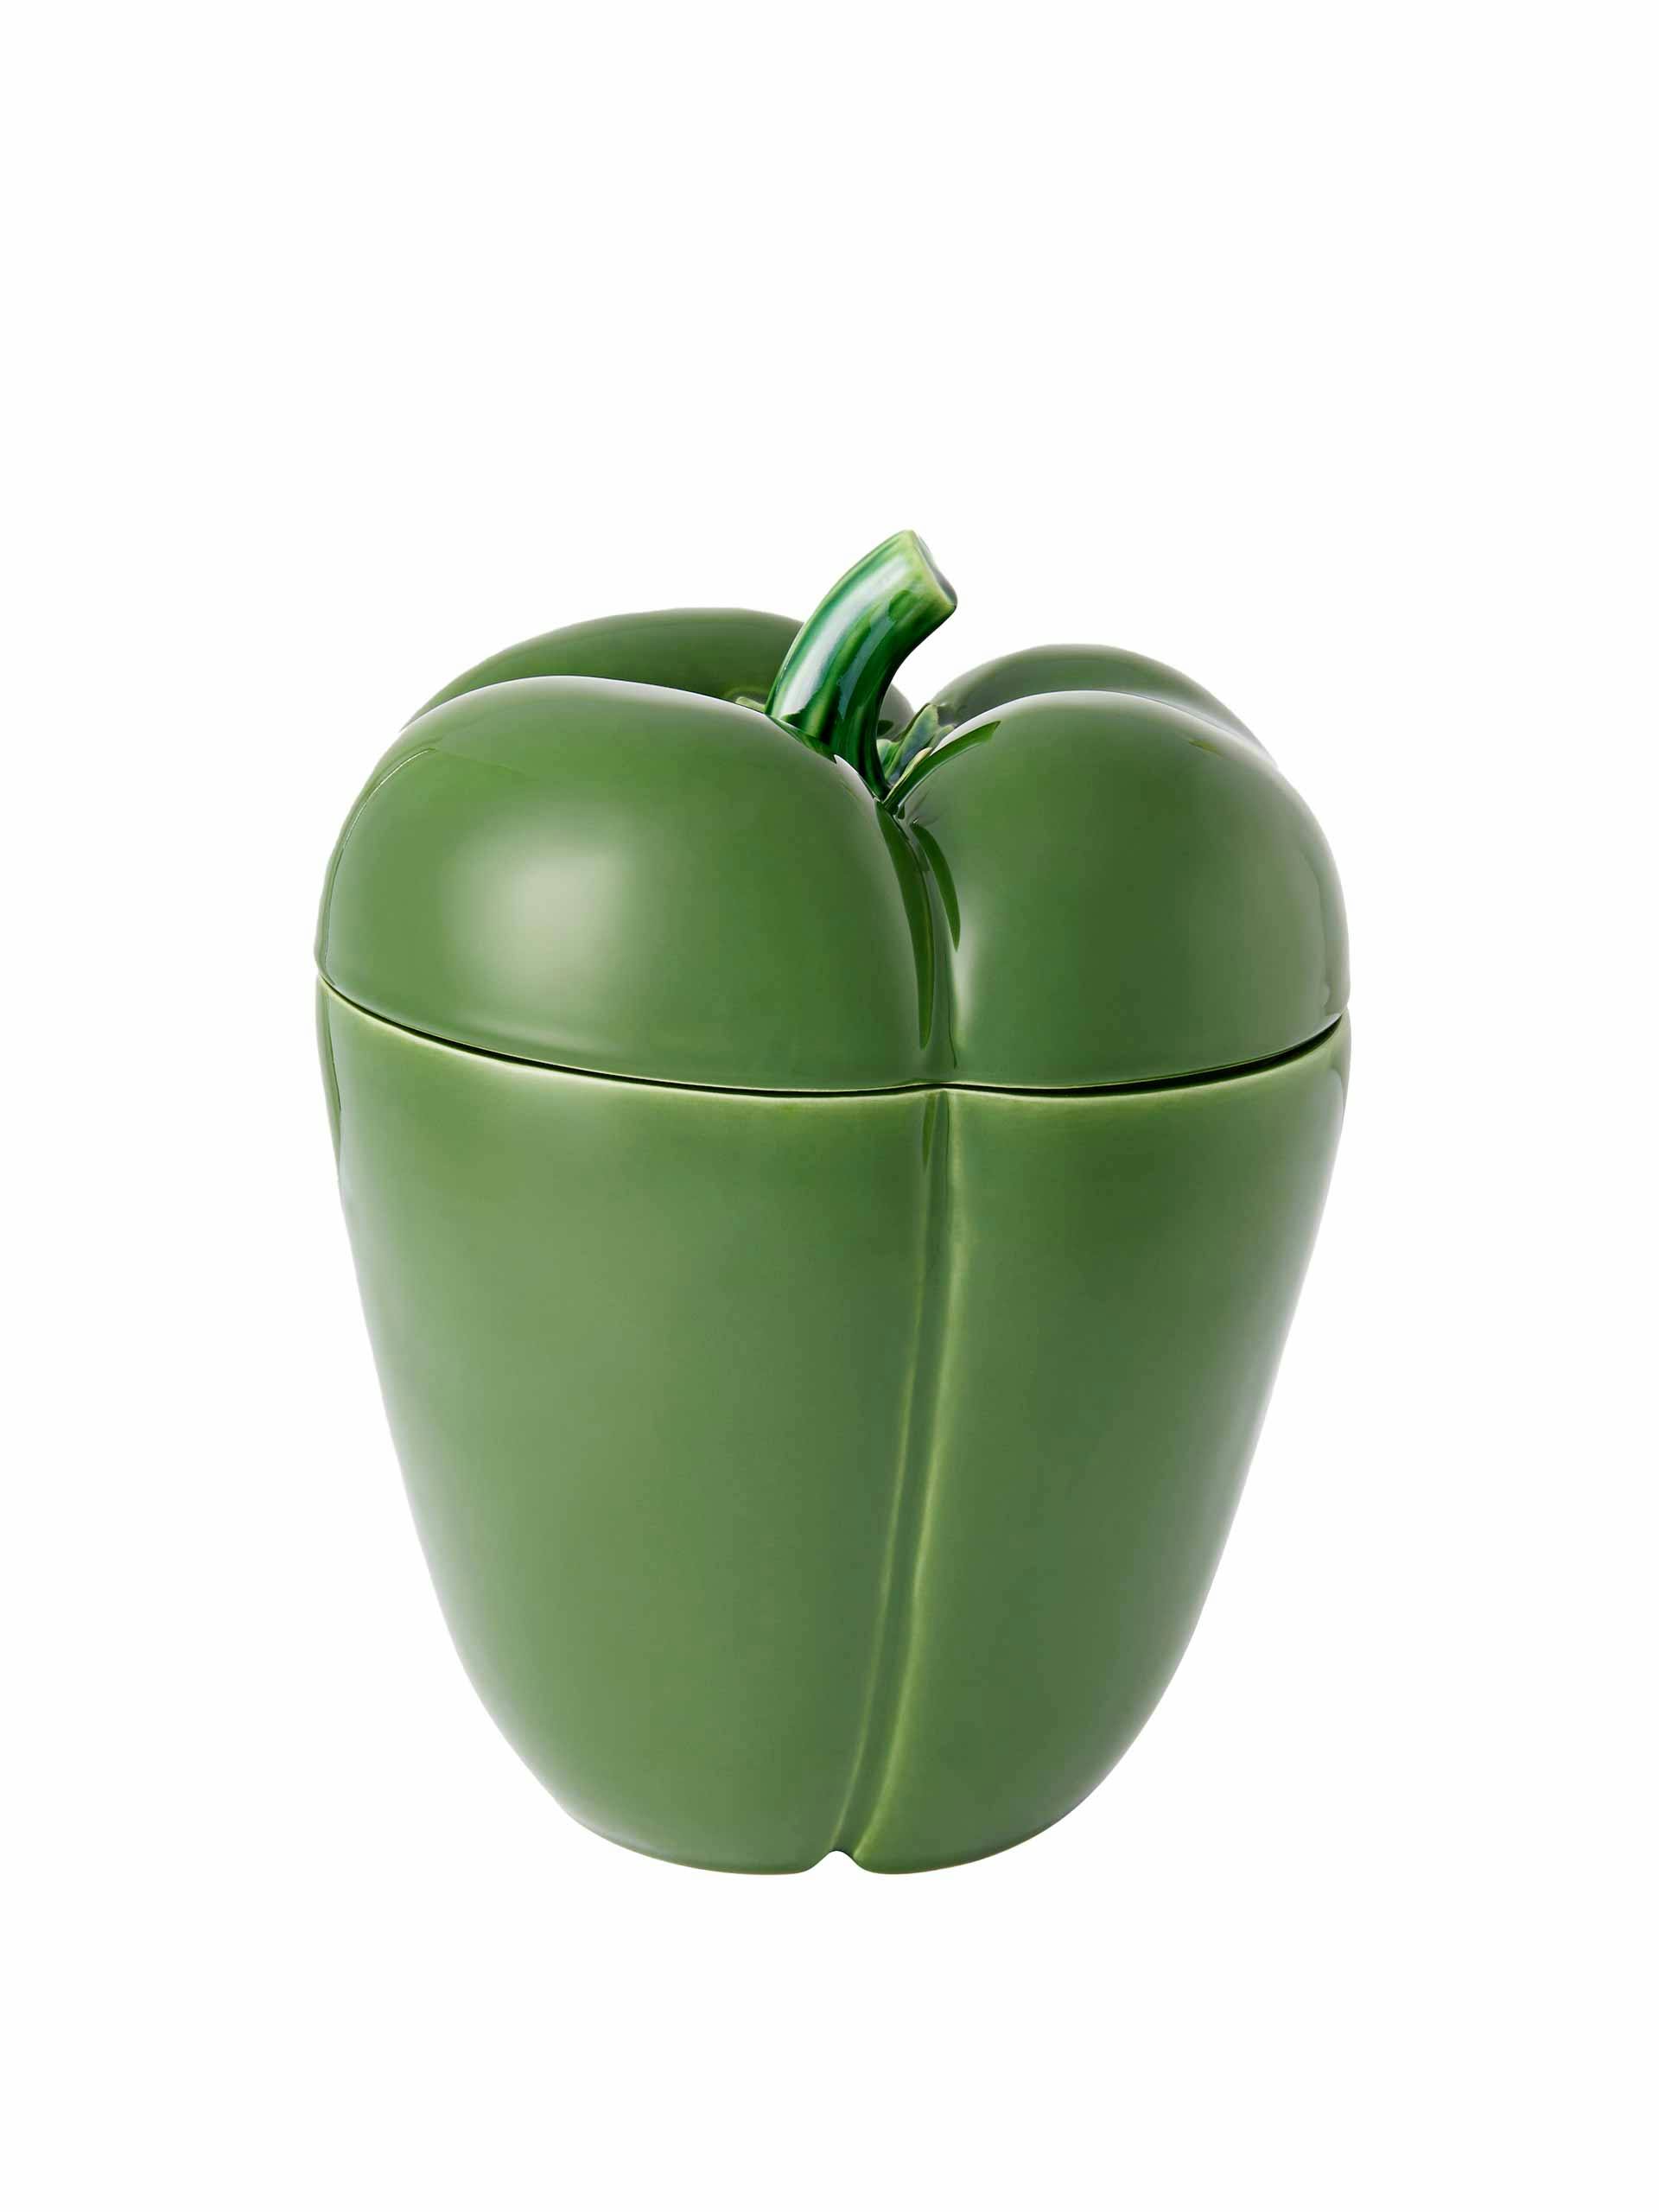 Green pimento container